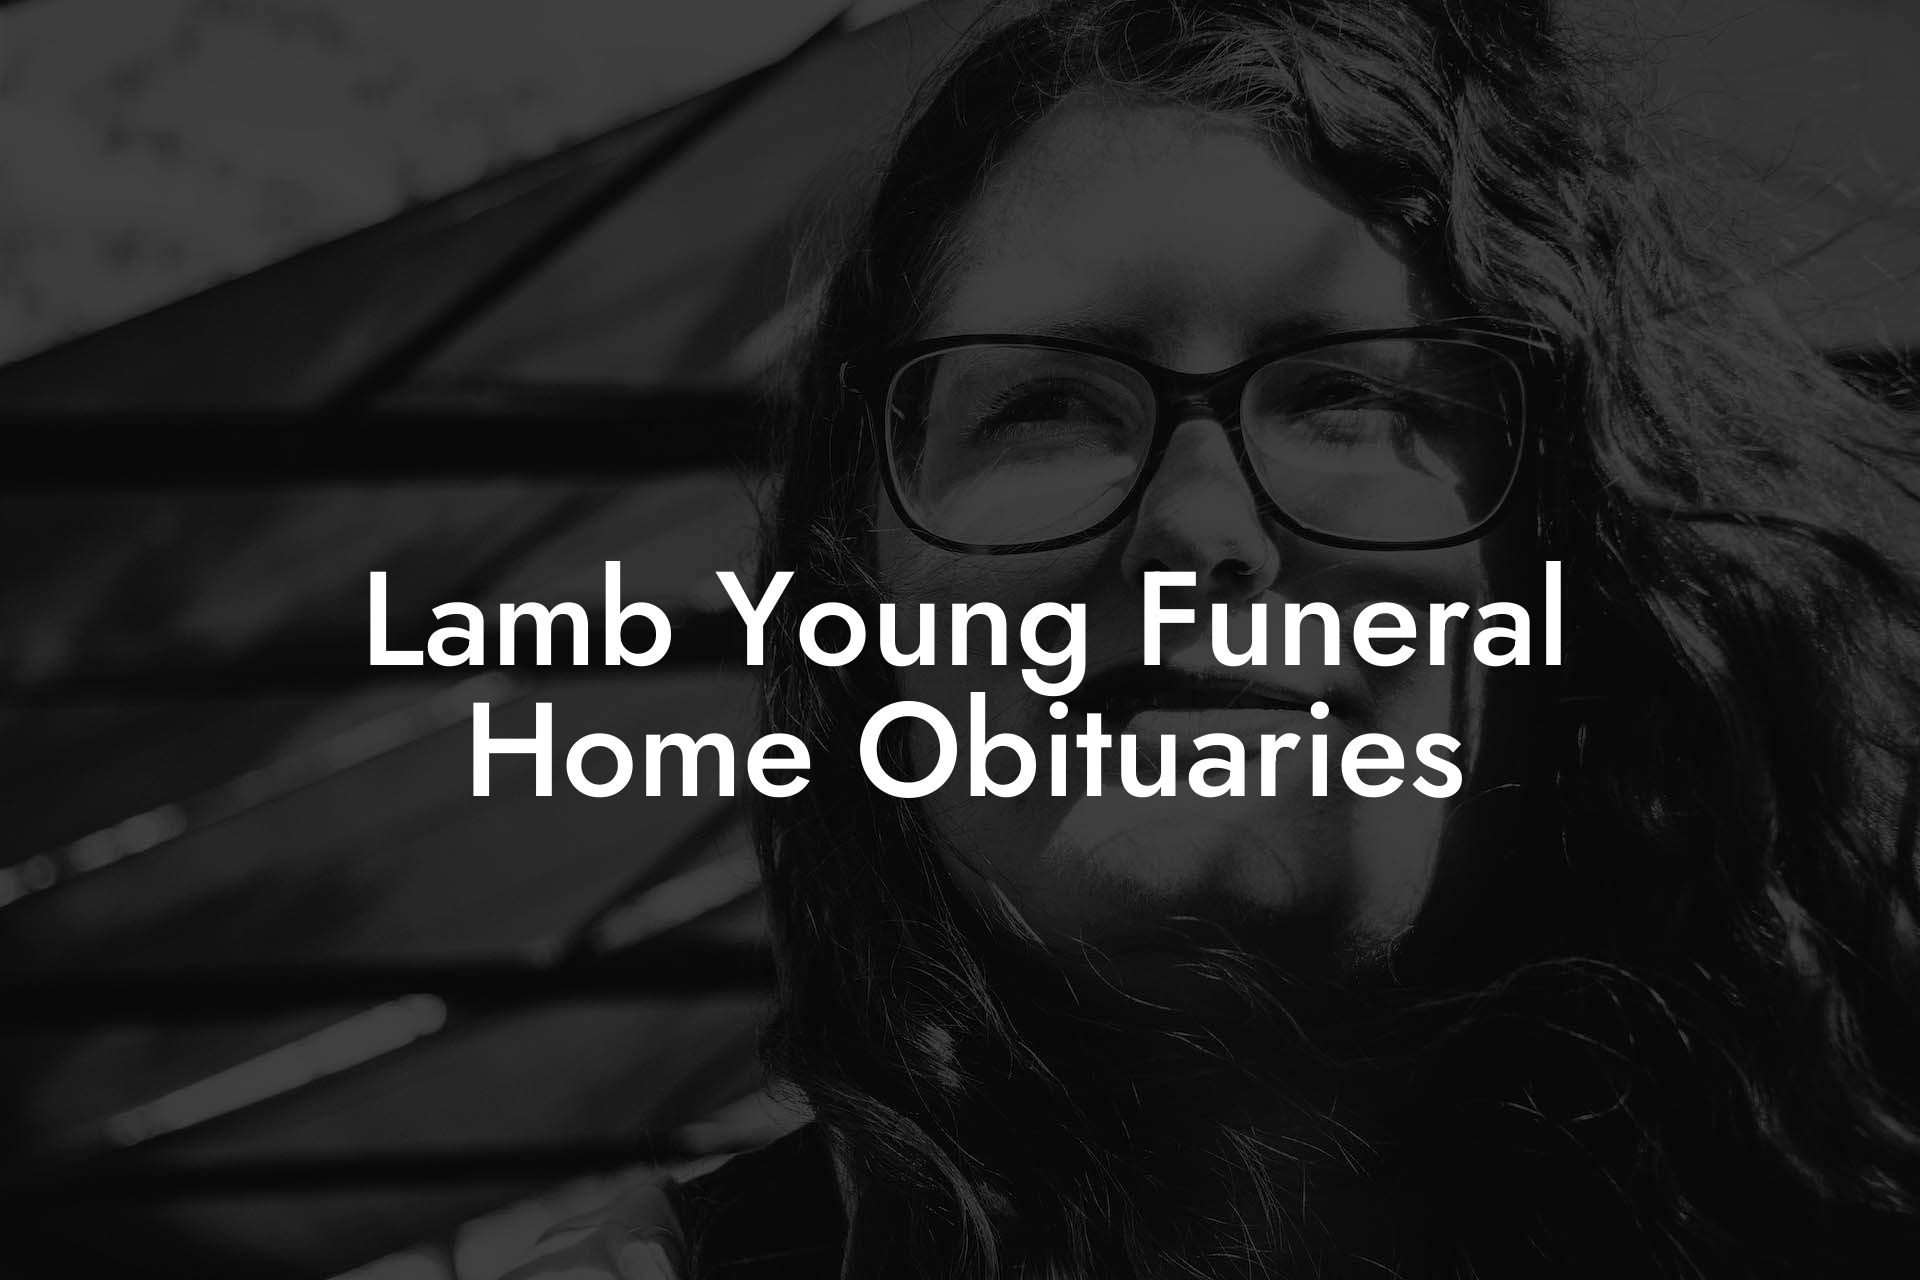 Lamb Young Funeral Home Obituaries